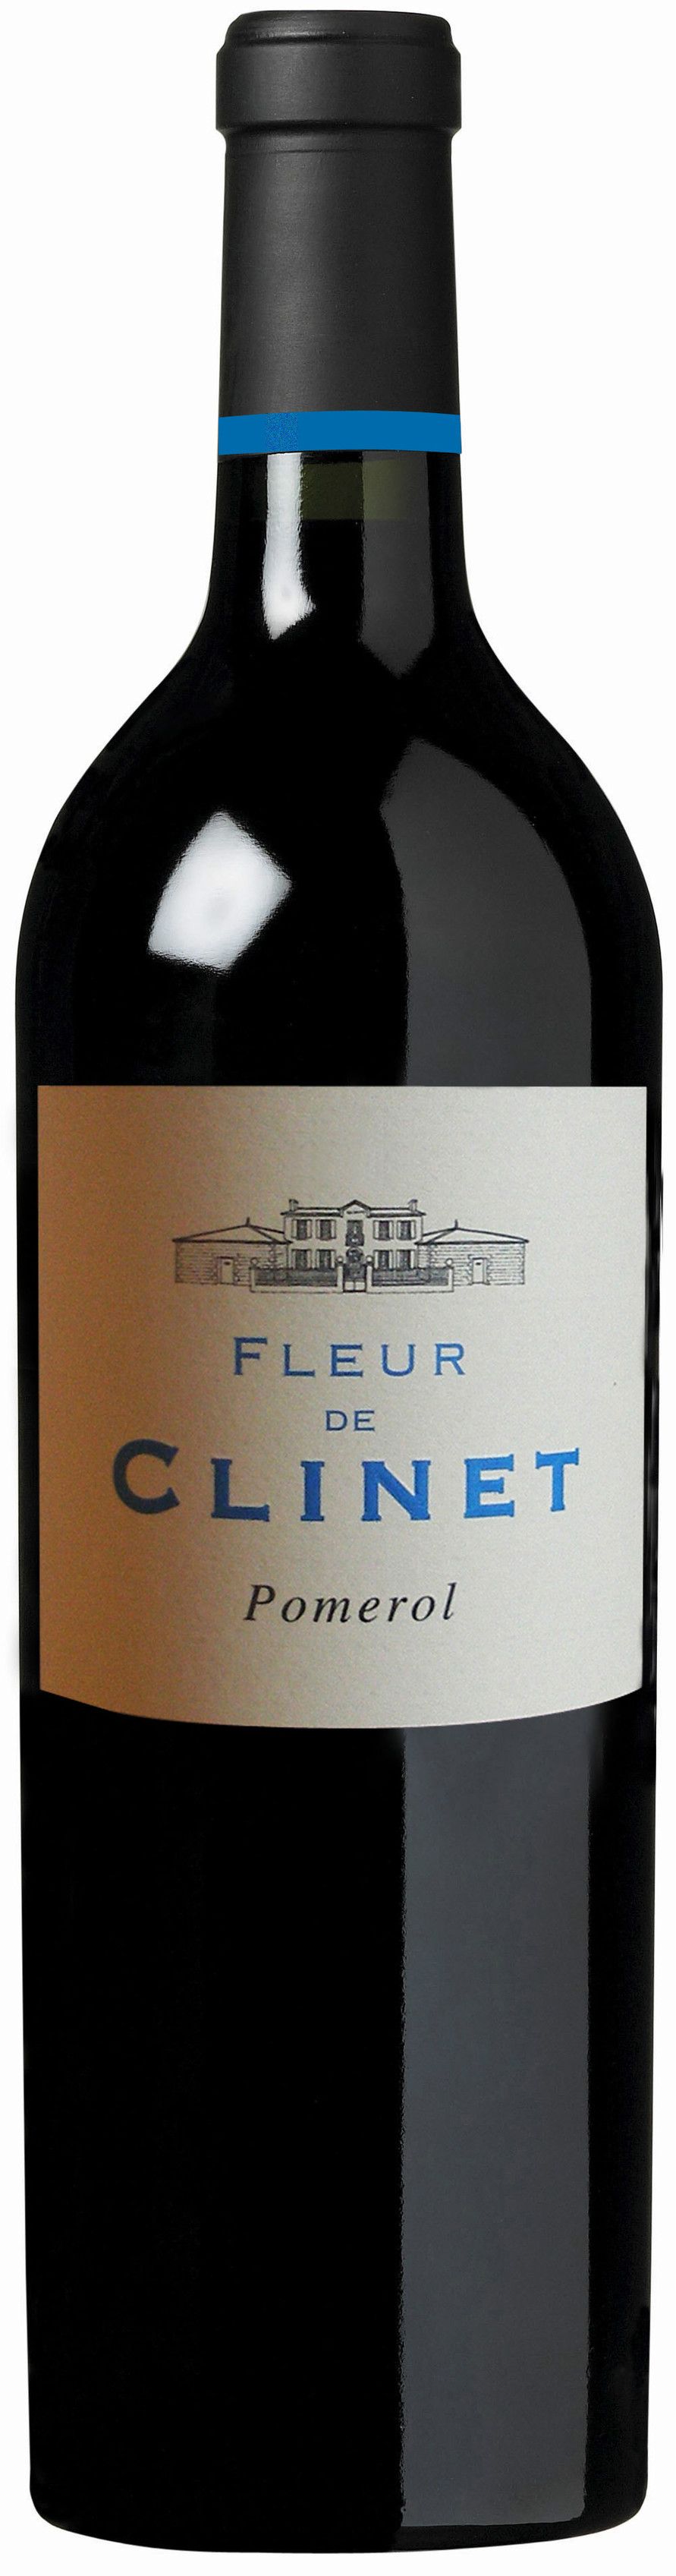 Chateau Clinet, Fleur De Clinet, 2011